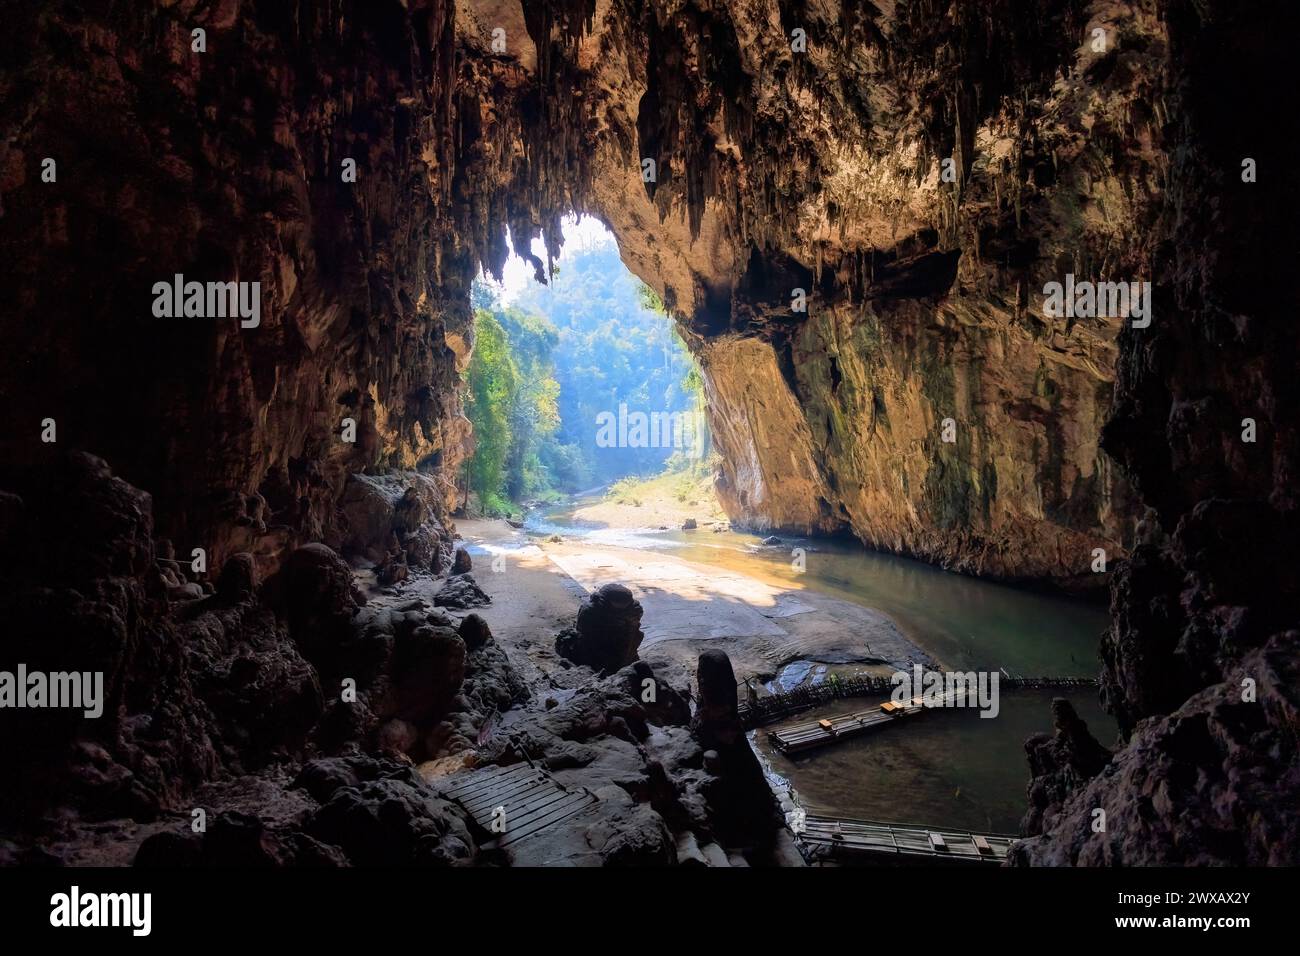 Ampia apertura nella grotta Nam Tod che conduce ad una foresta pluviale tropicale. Foto Stock